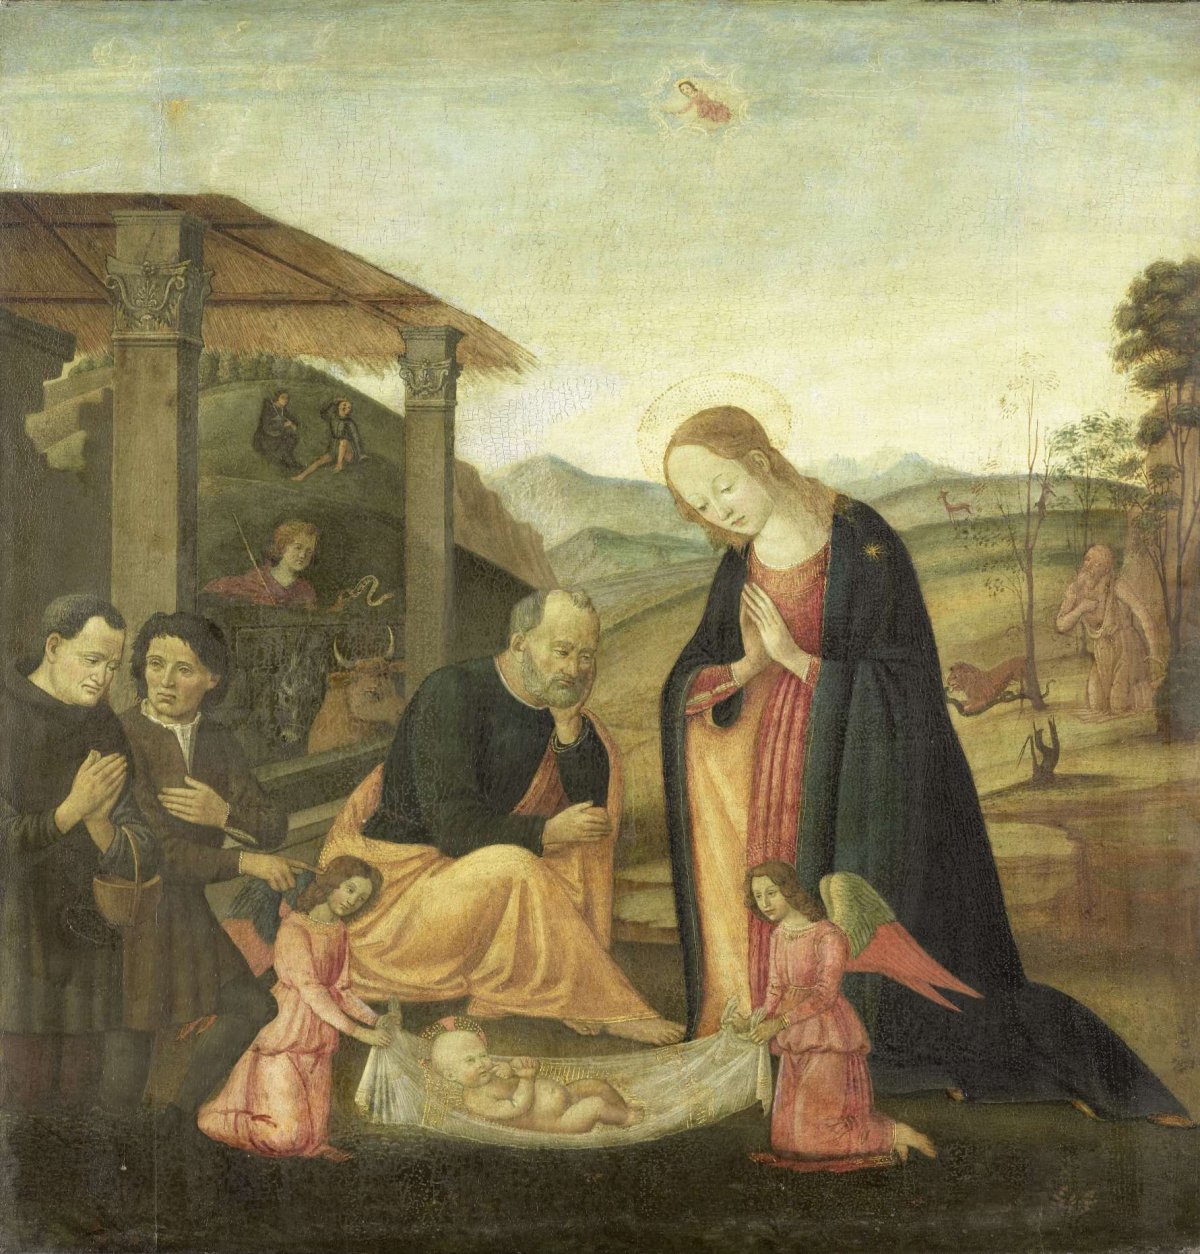 Adoration of the Christ Child, Jacopo del Sellaio, 1485 - 1520